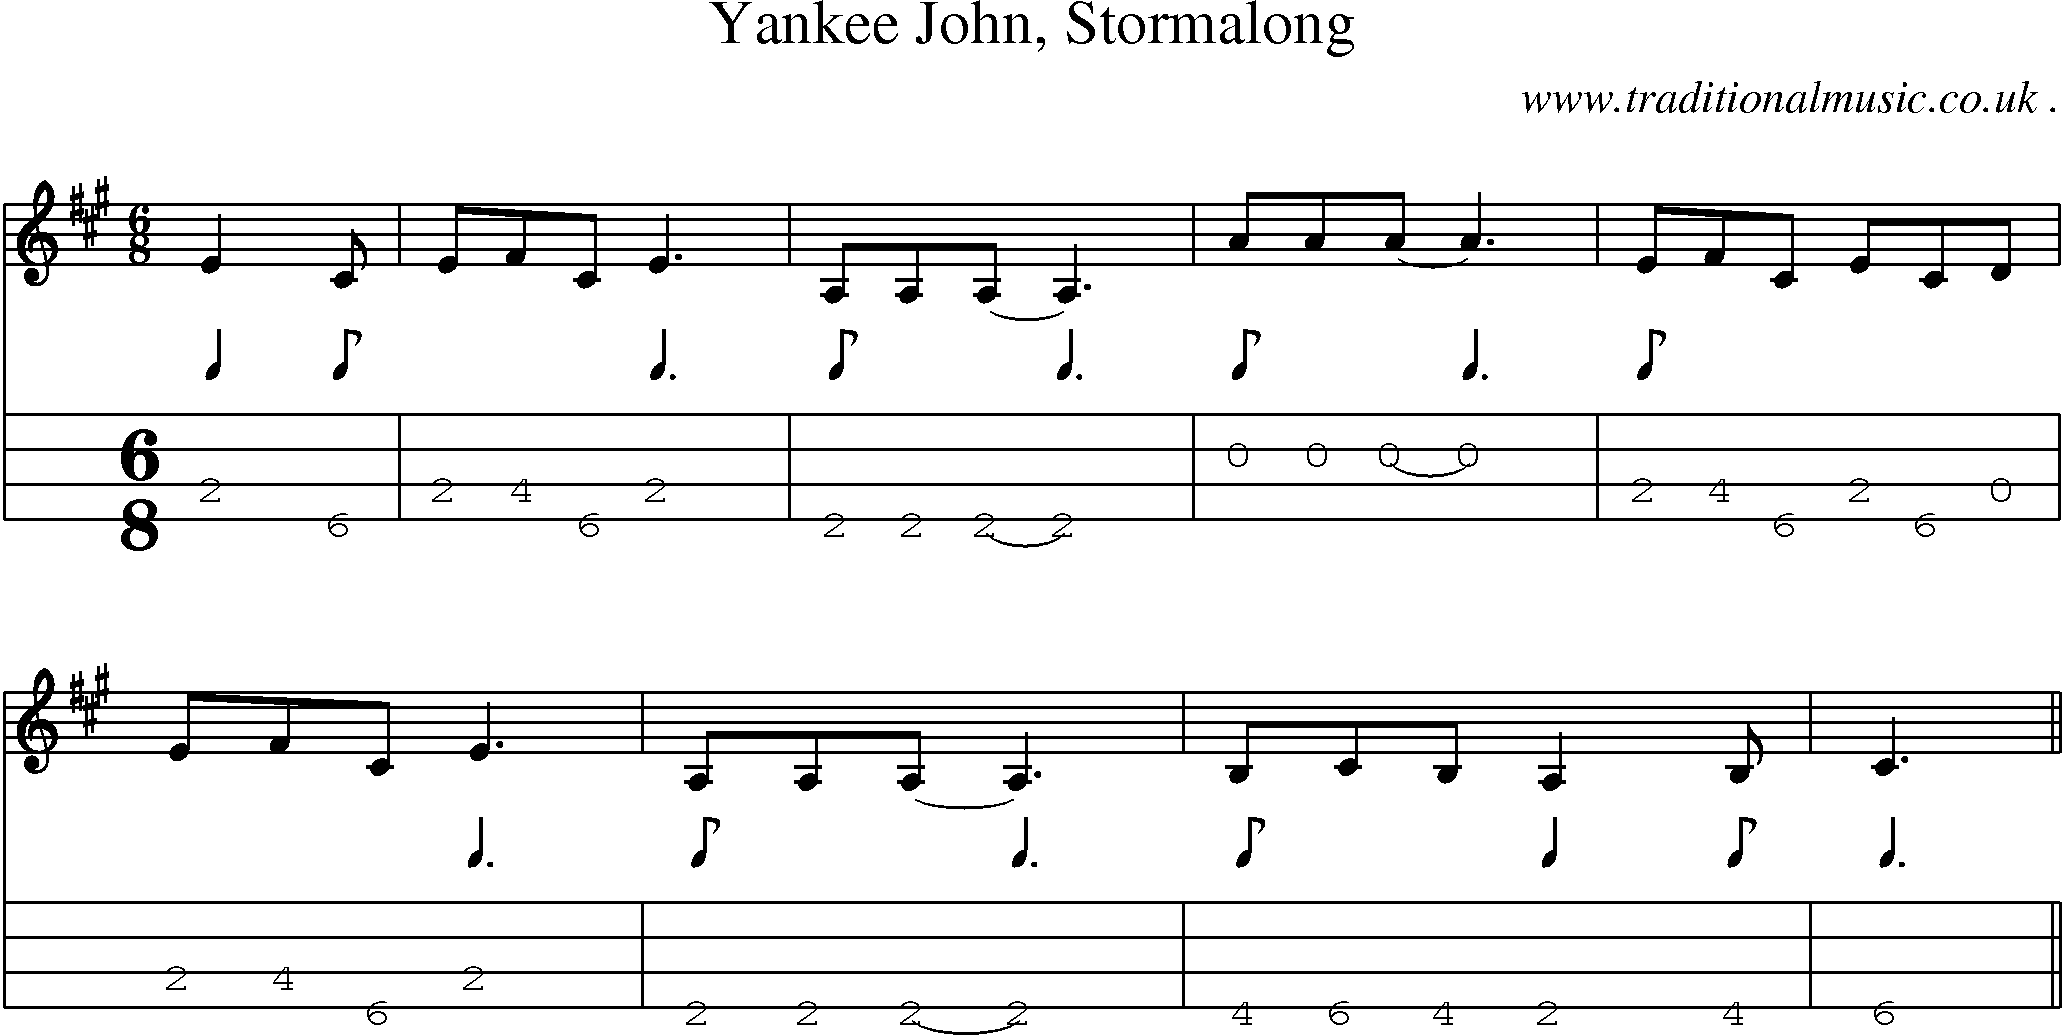 Sheet-Music and Mandolin Tabs for Yankee John Stormalong